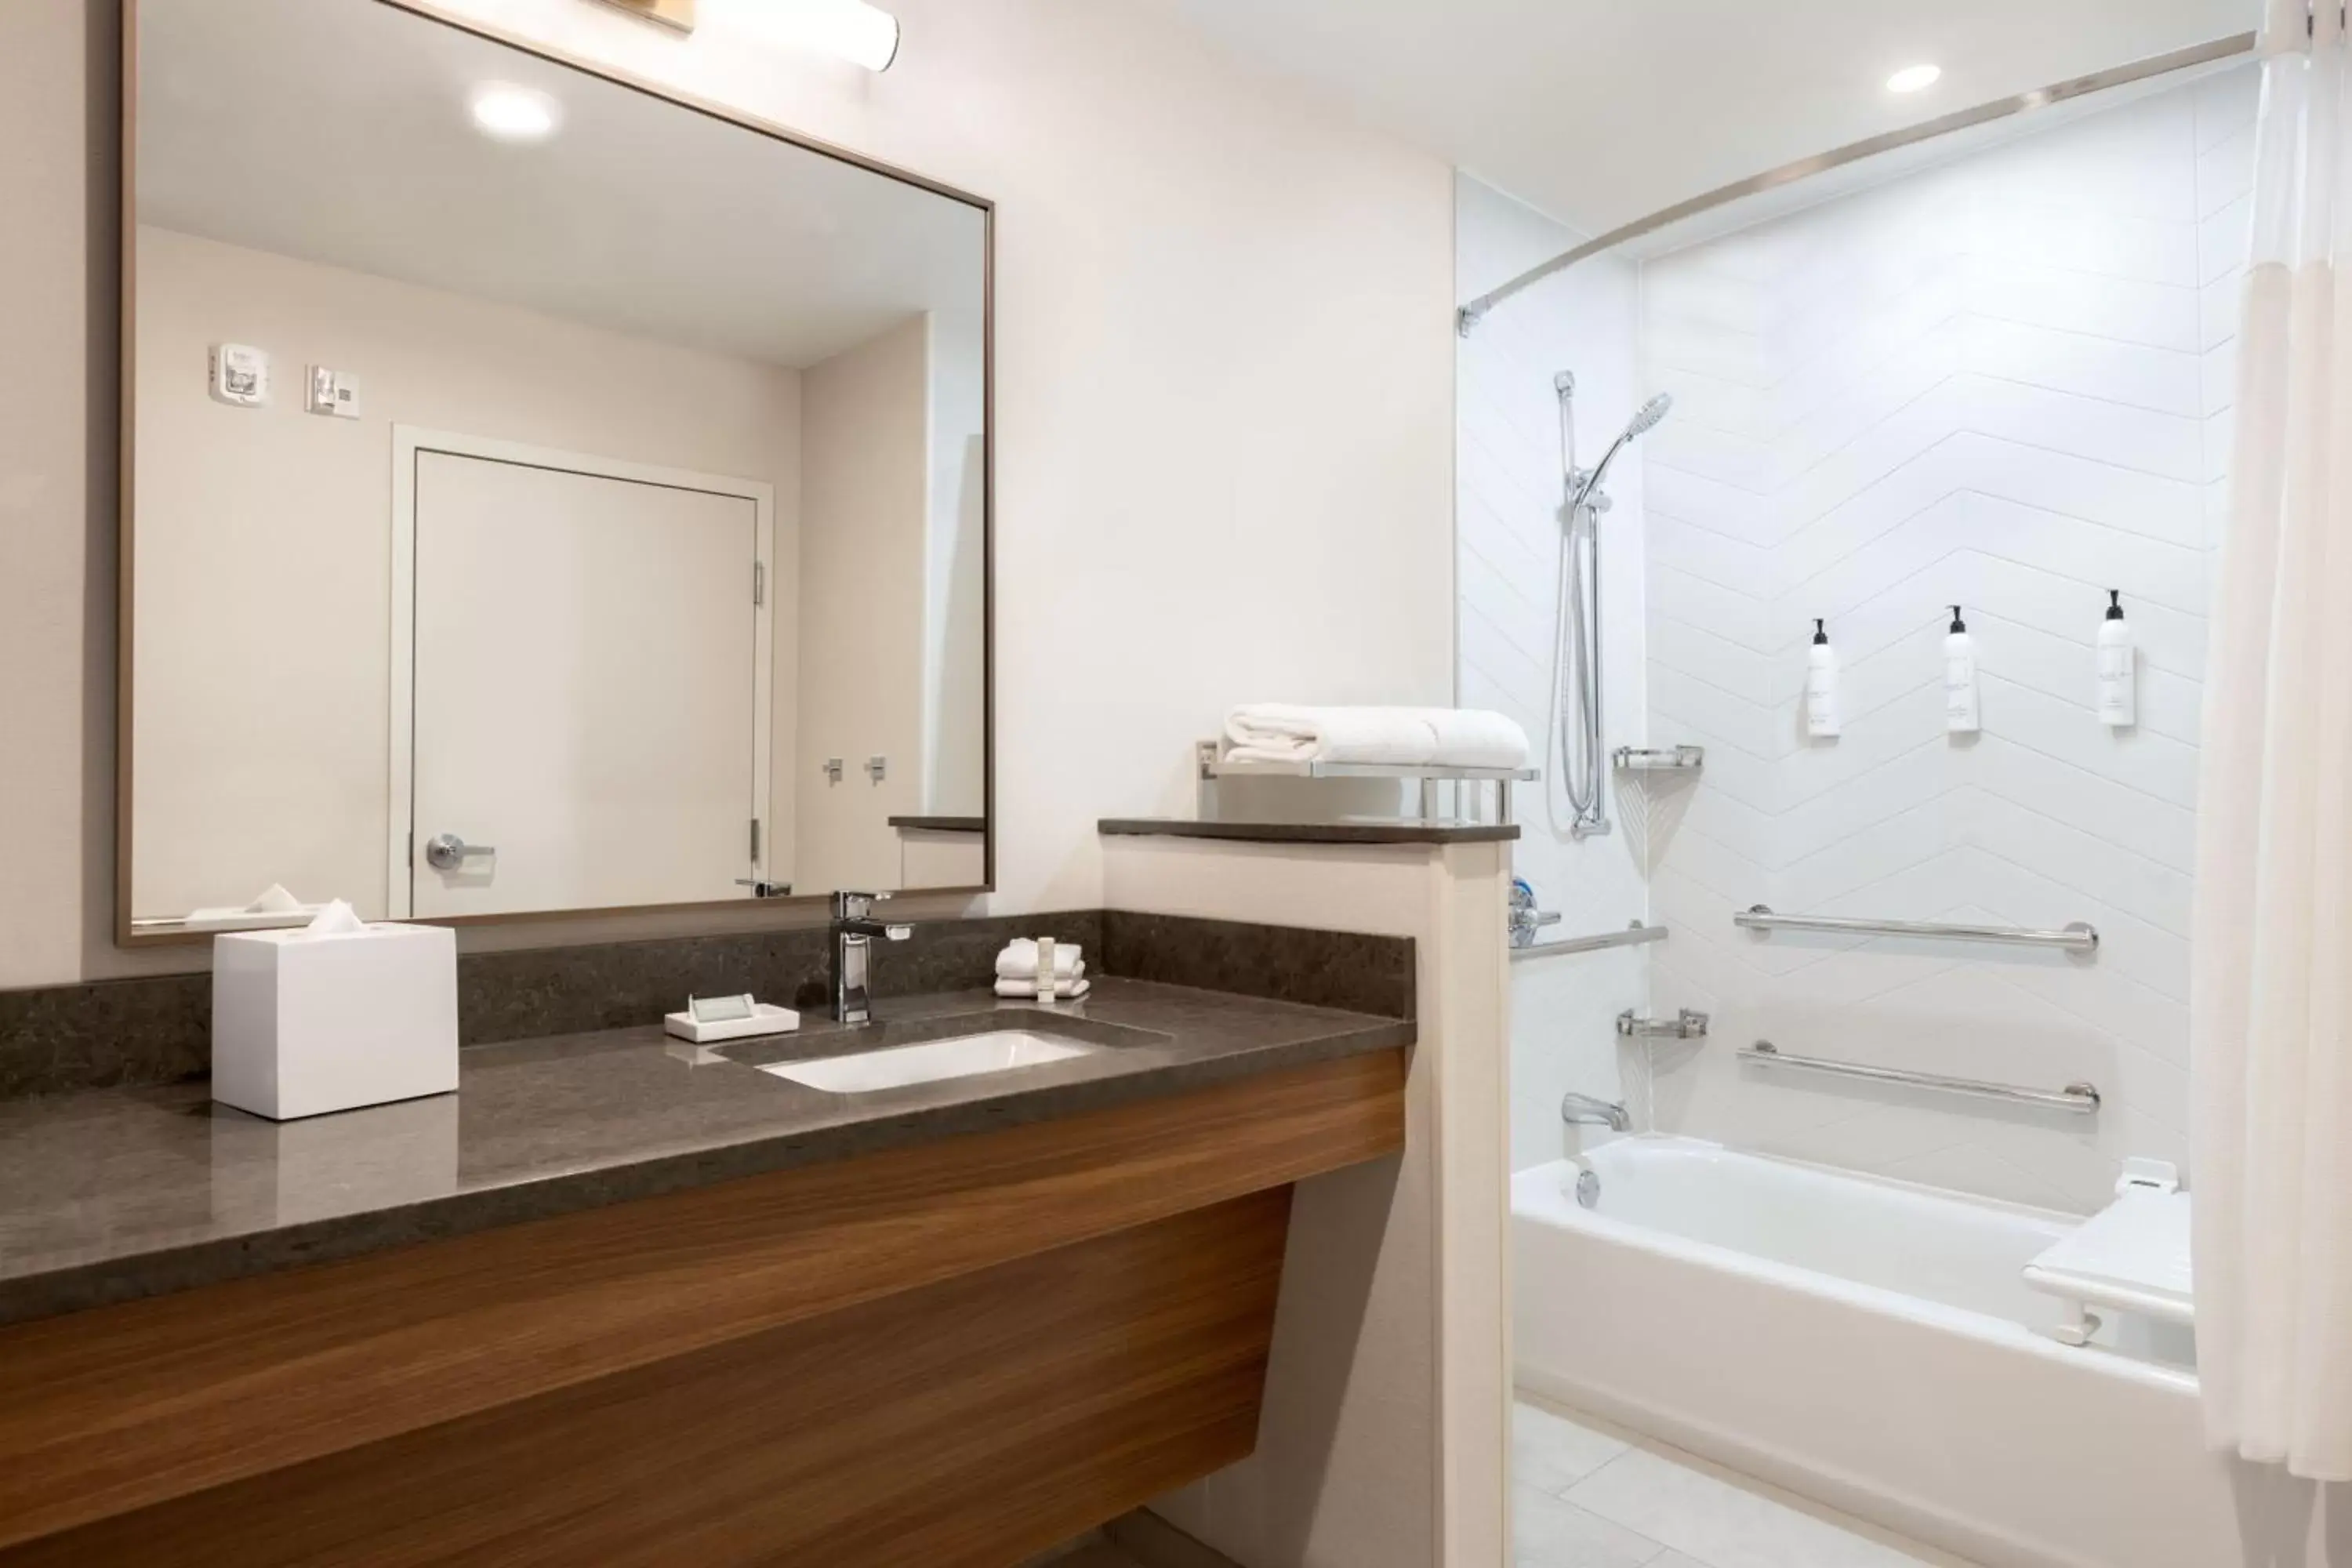 Bathroom in Fairfield by Marriott Inn & Suites Rockaway